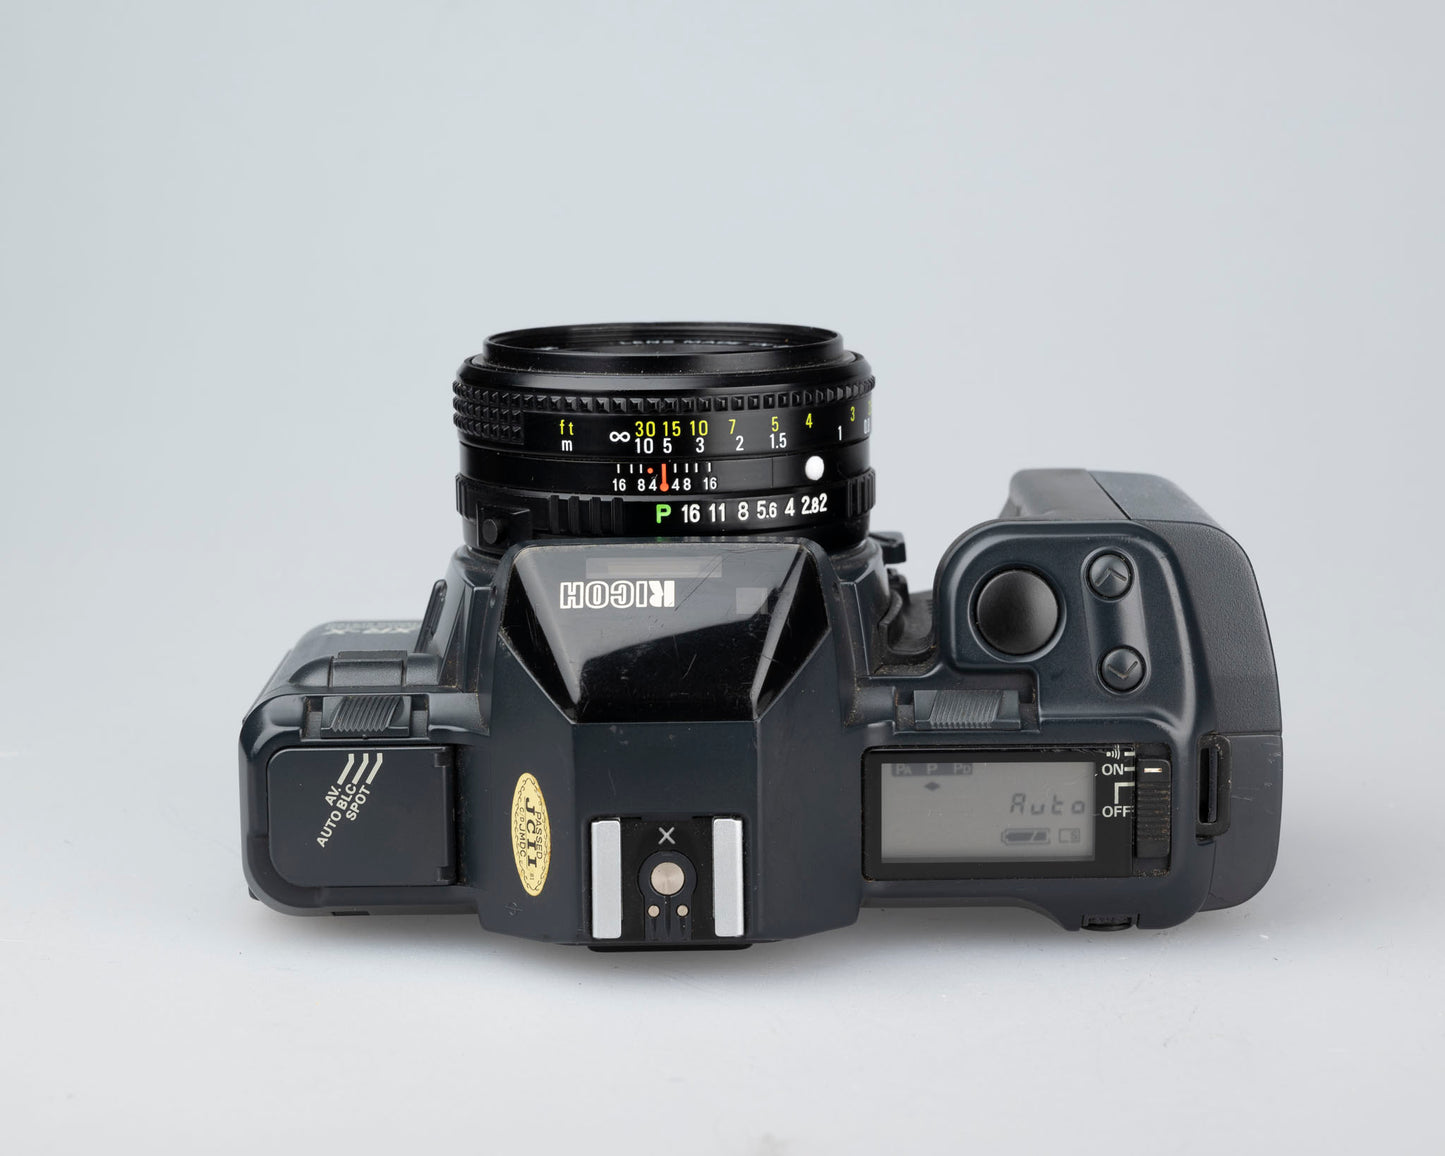 Ricoh XR-X 35mm SLR + Rikenon P 1:2 50mm lens